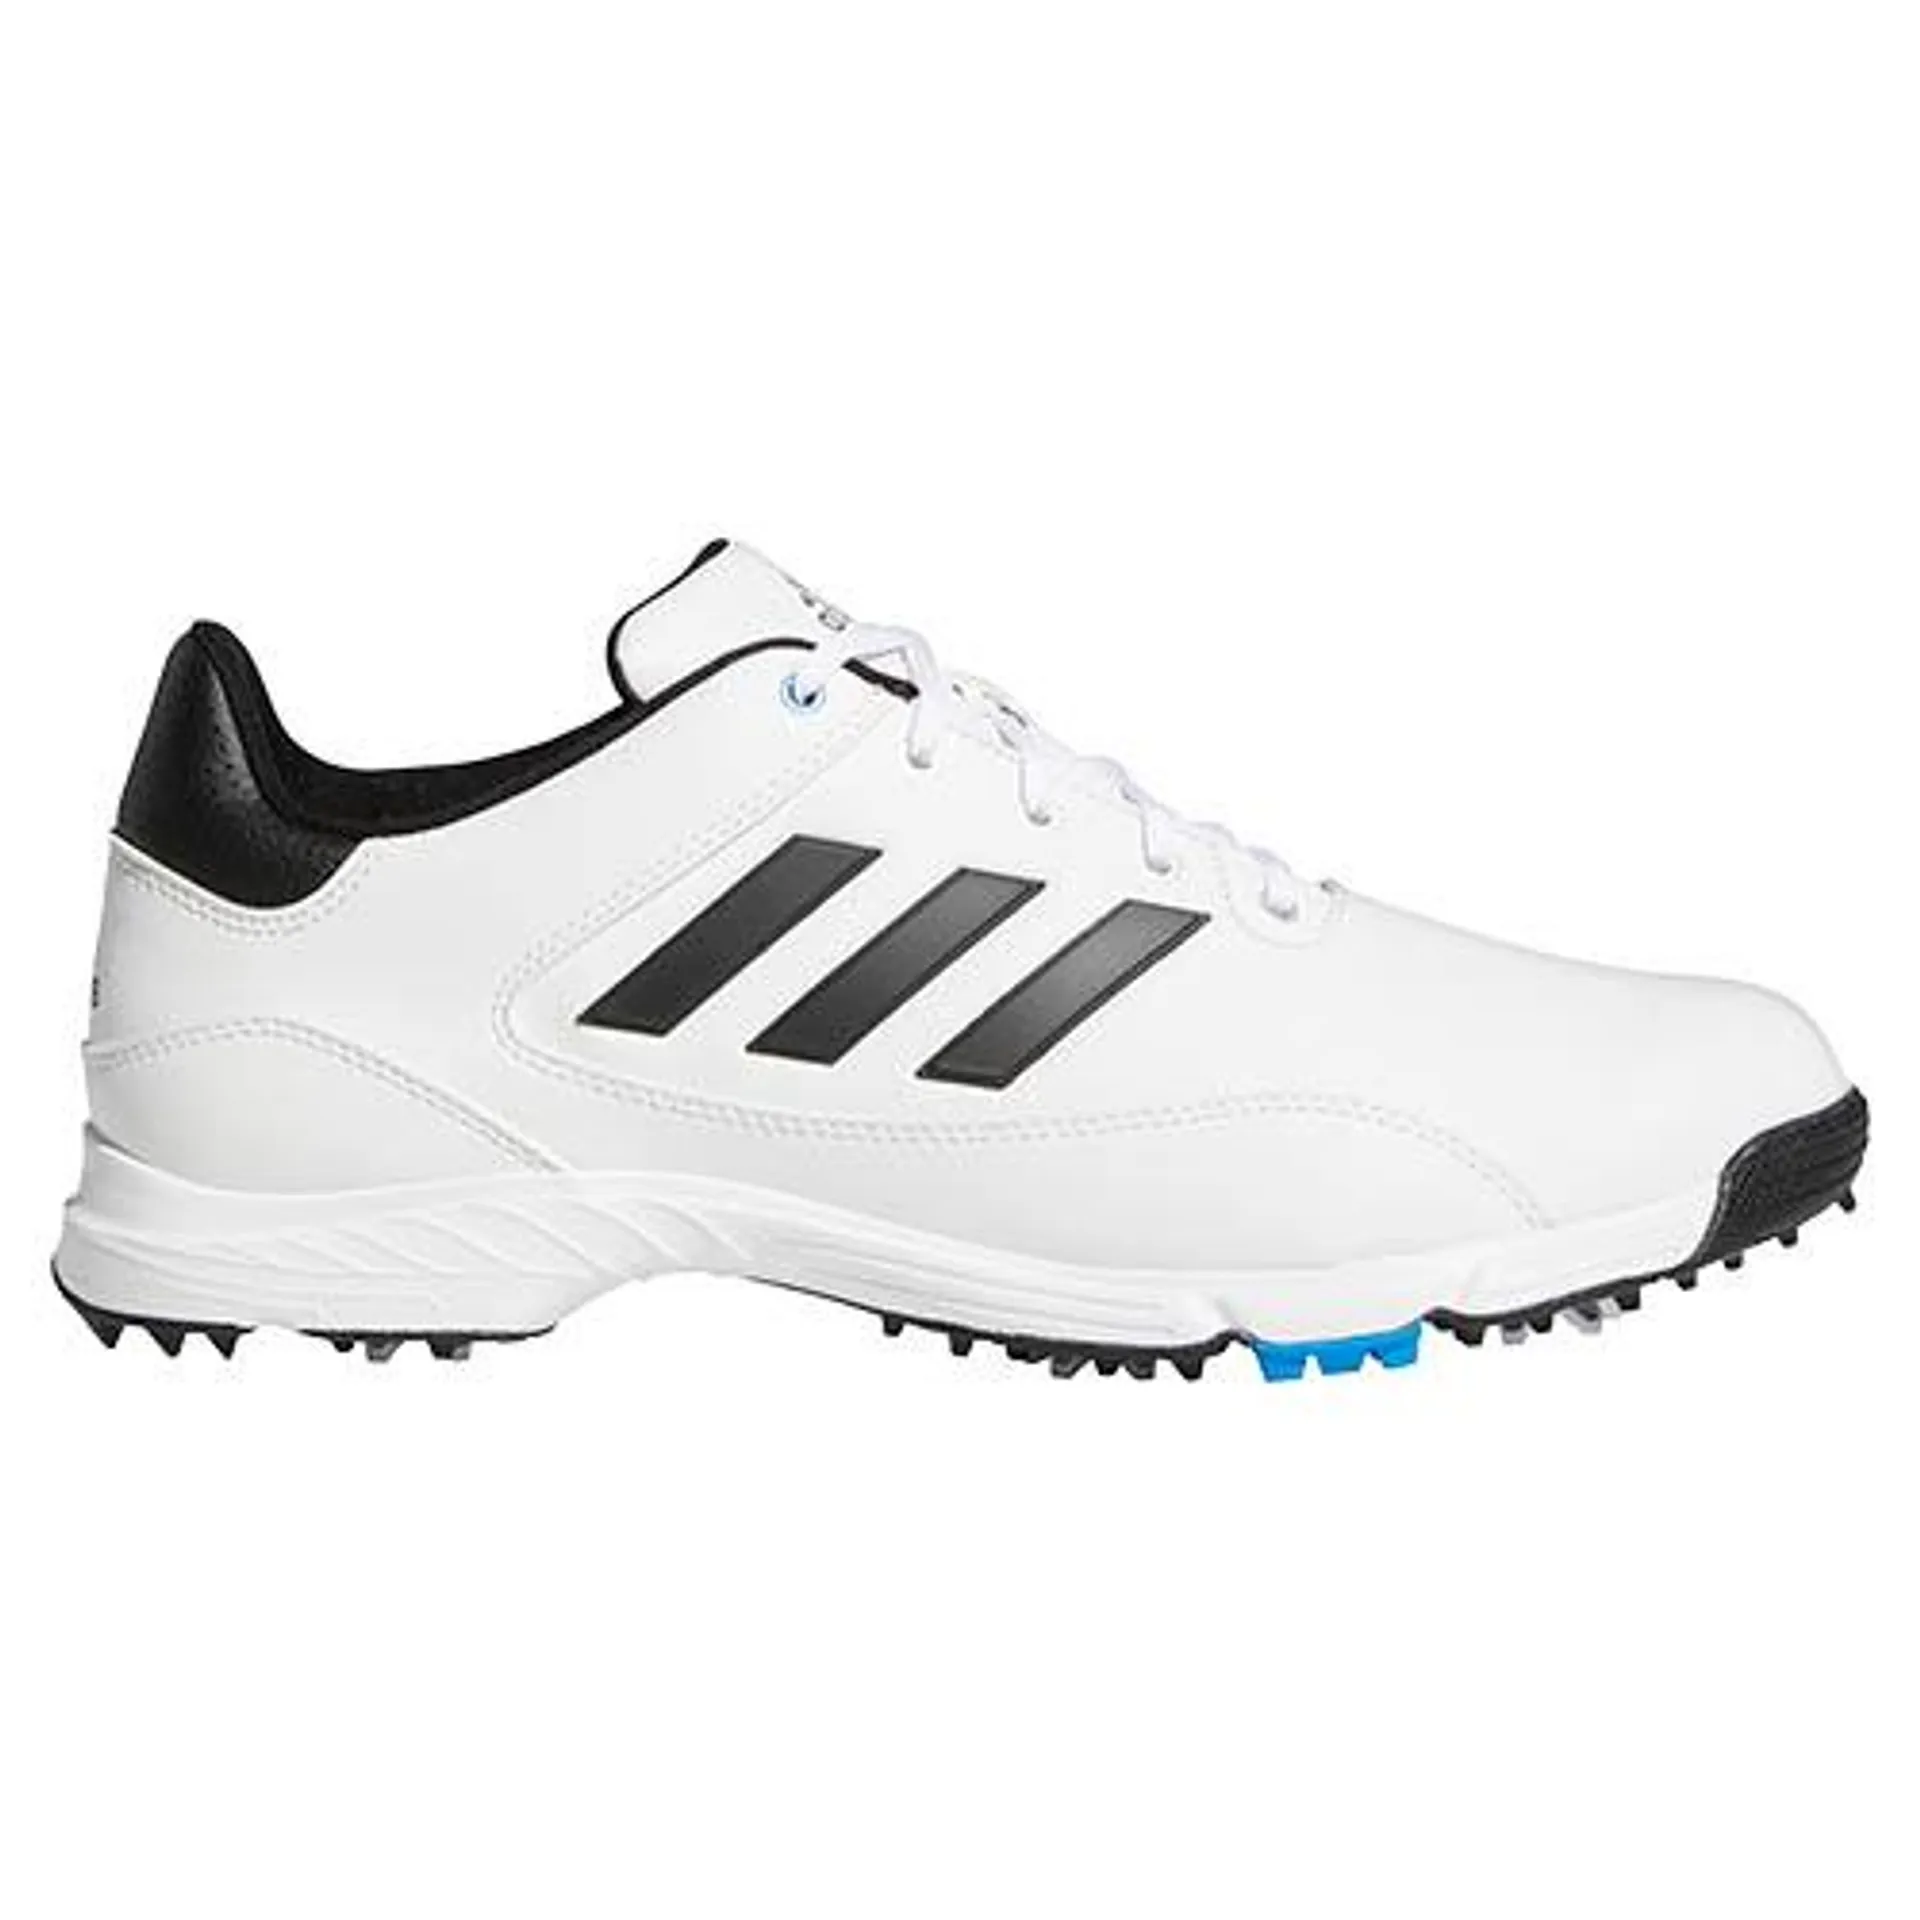 adidas Golflite Max shoes – White/Black/Blue GV9679